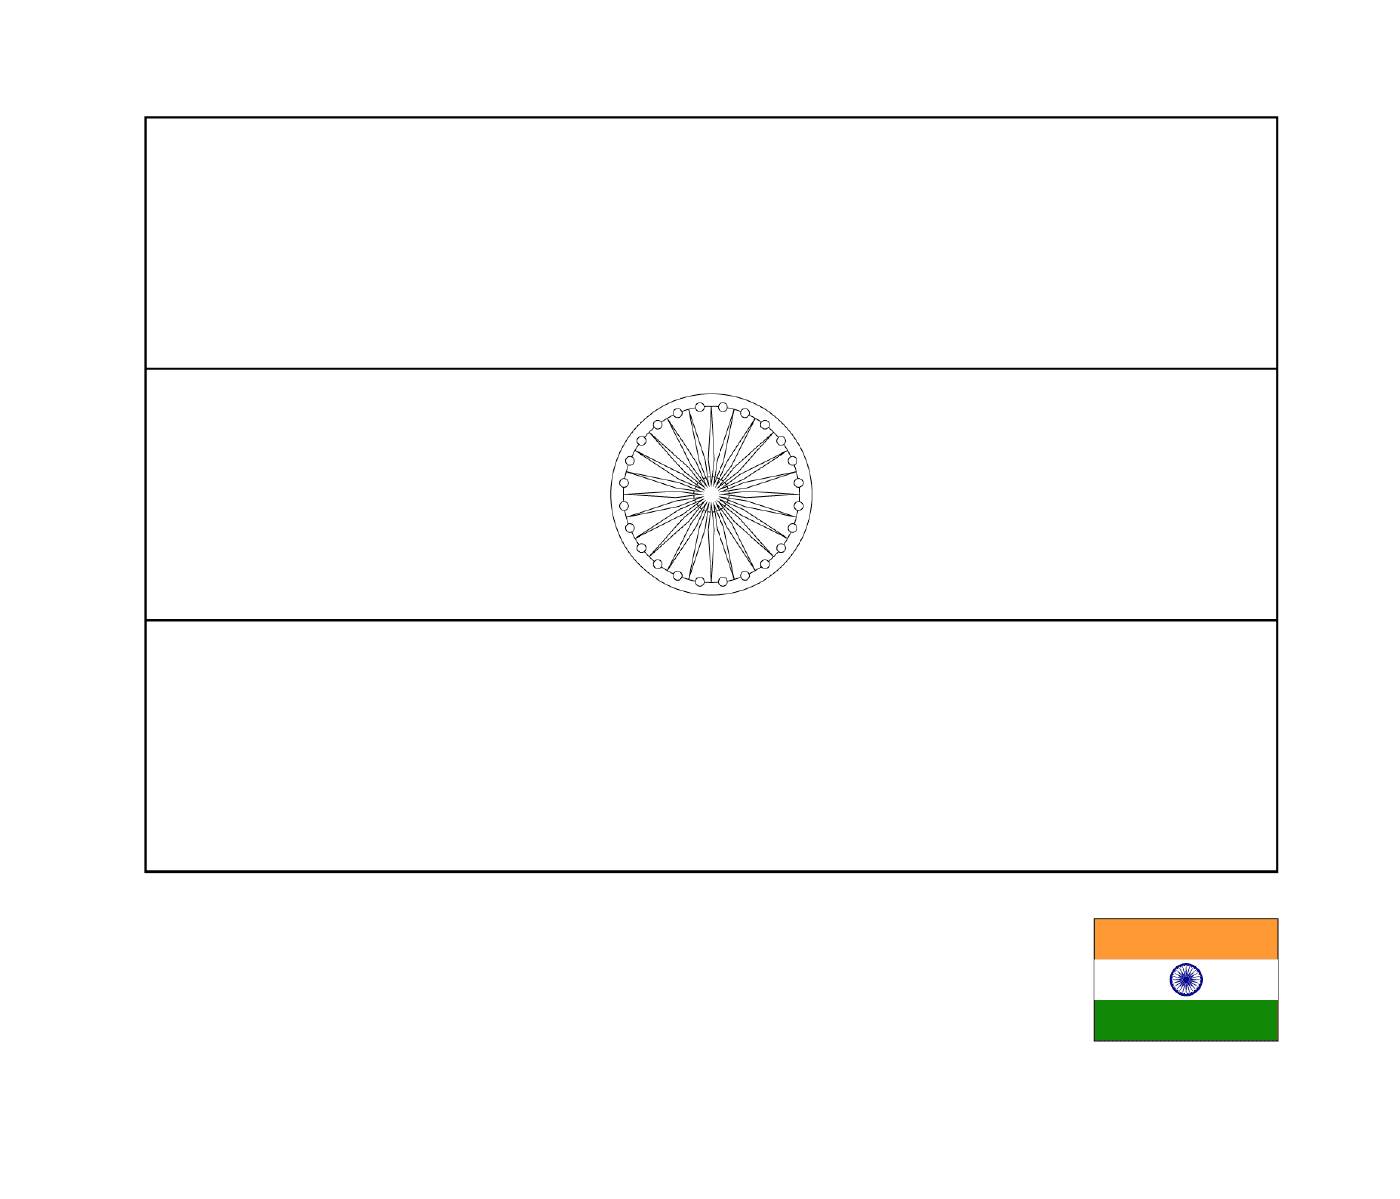  भारत का ध्वज 